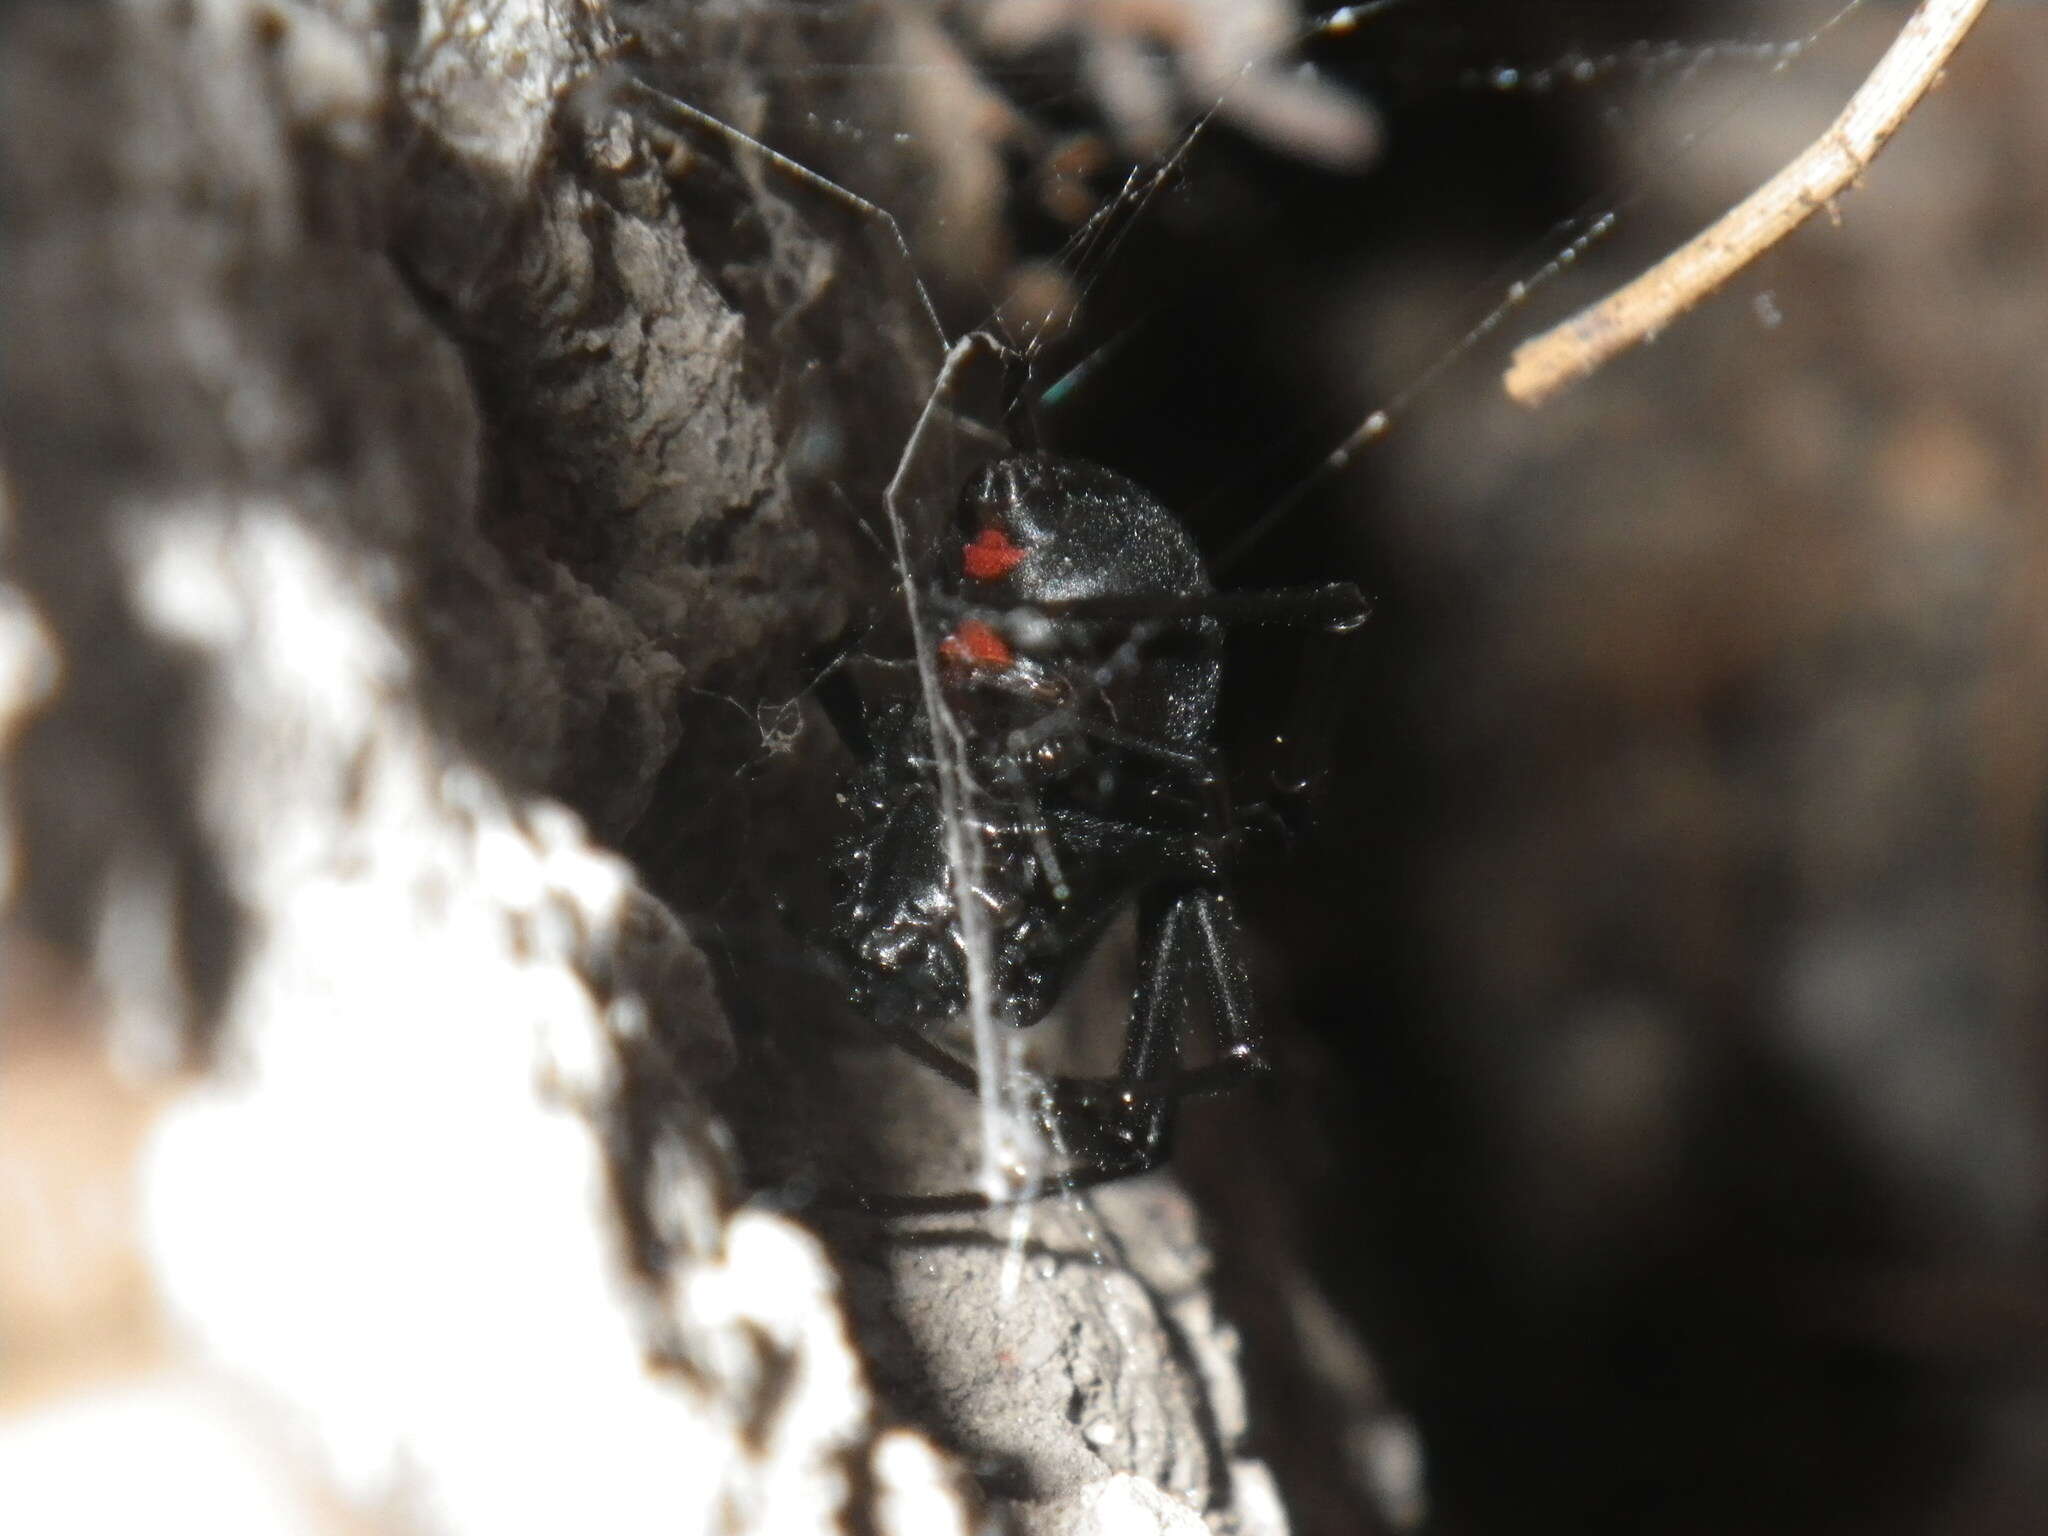 Image of Western Black Widow spider